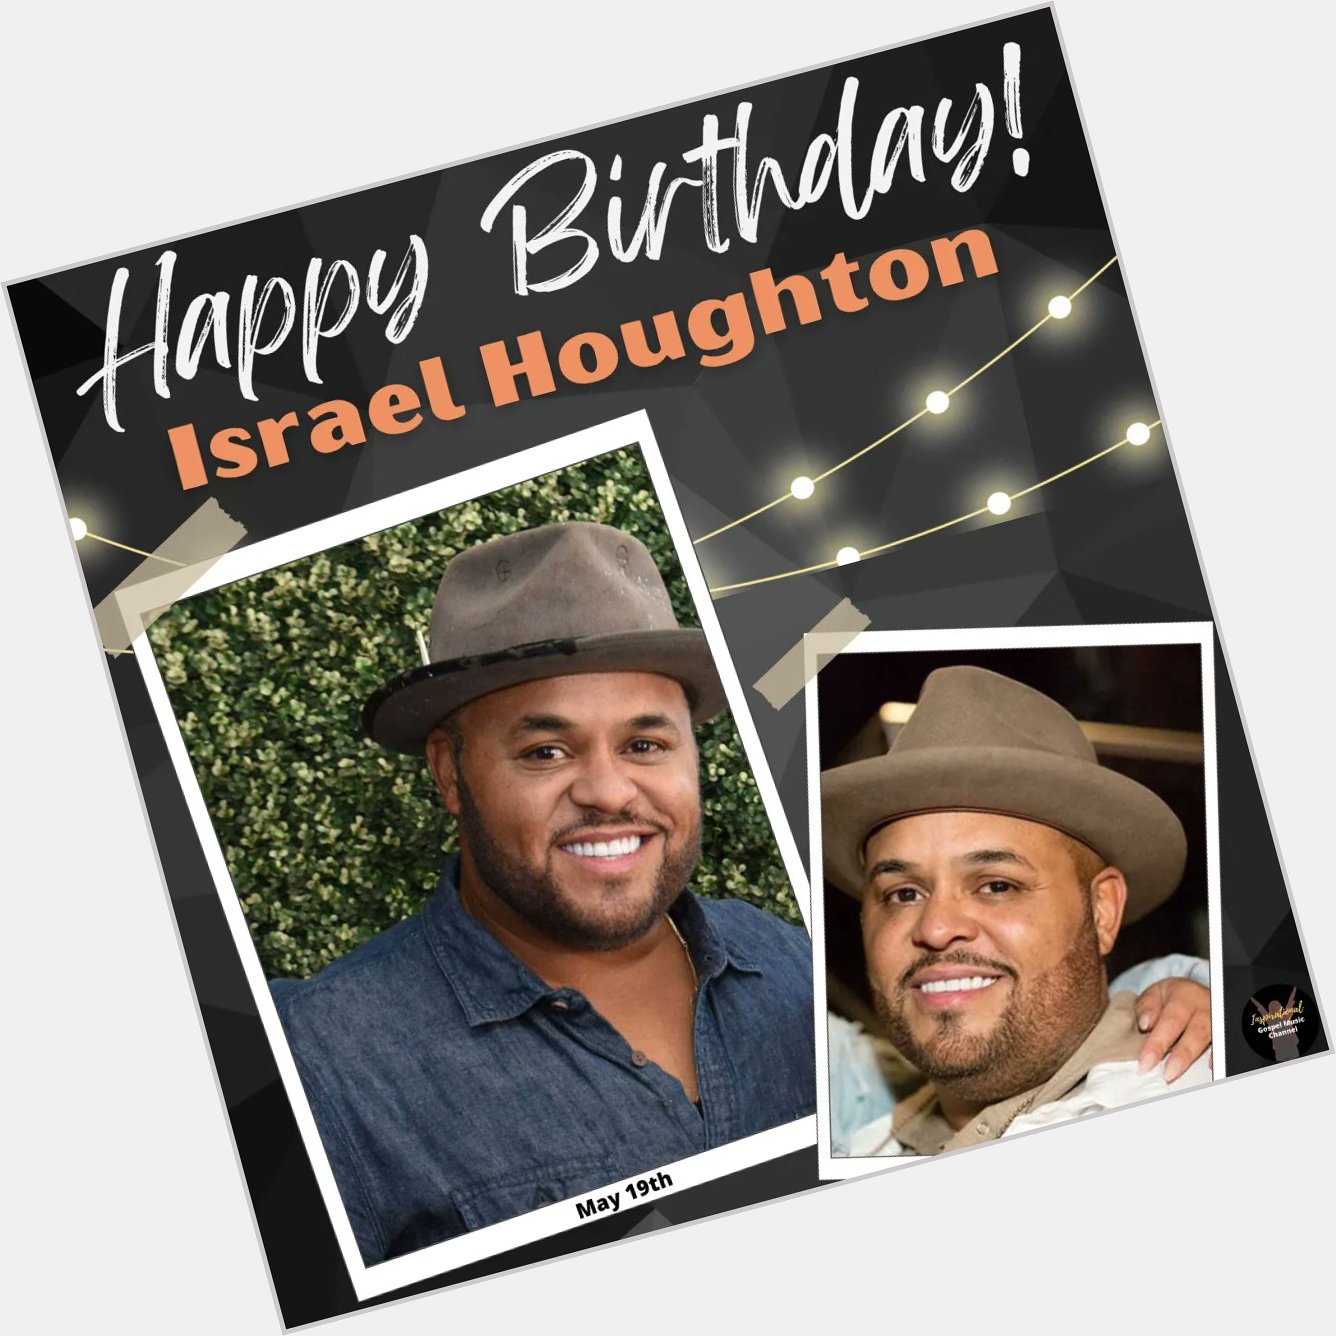 Happy Birthday, Israel Houghton!
*     